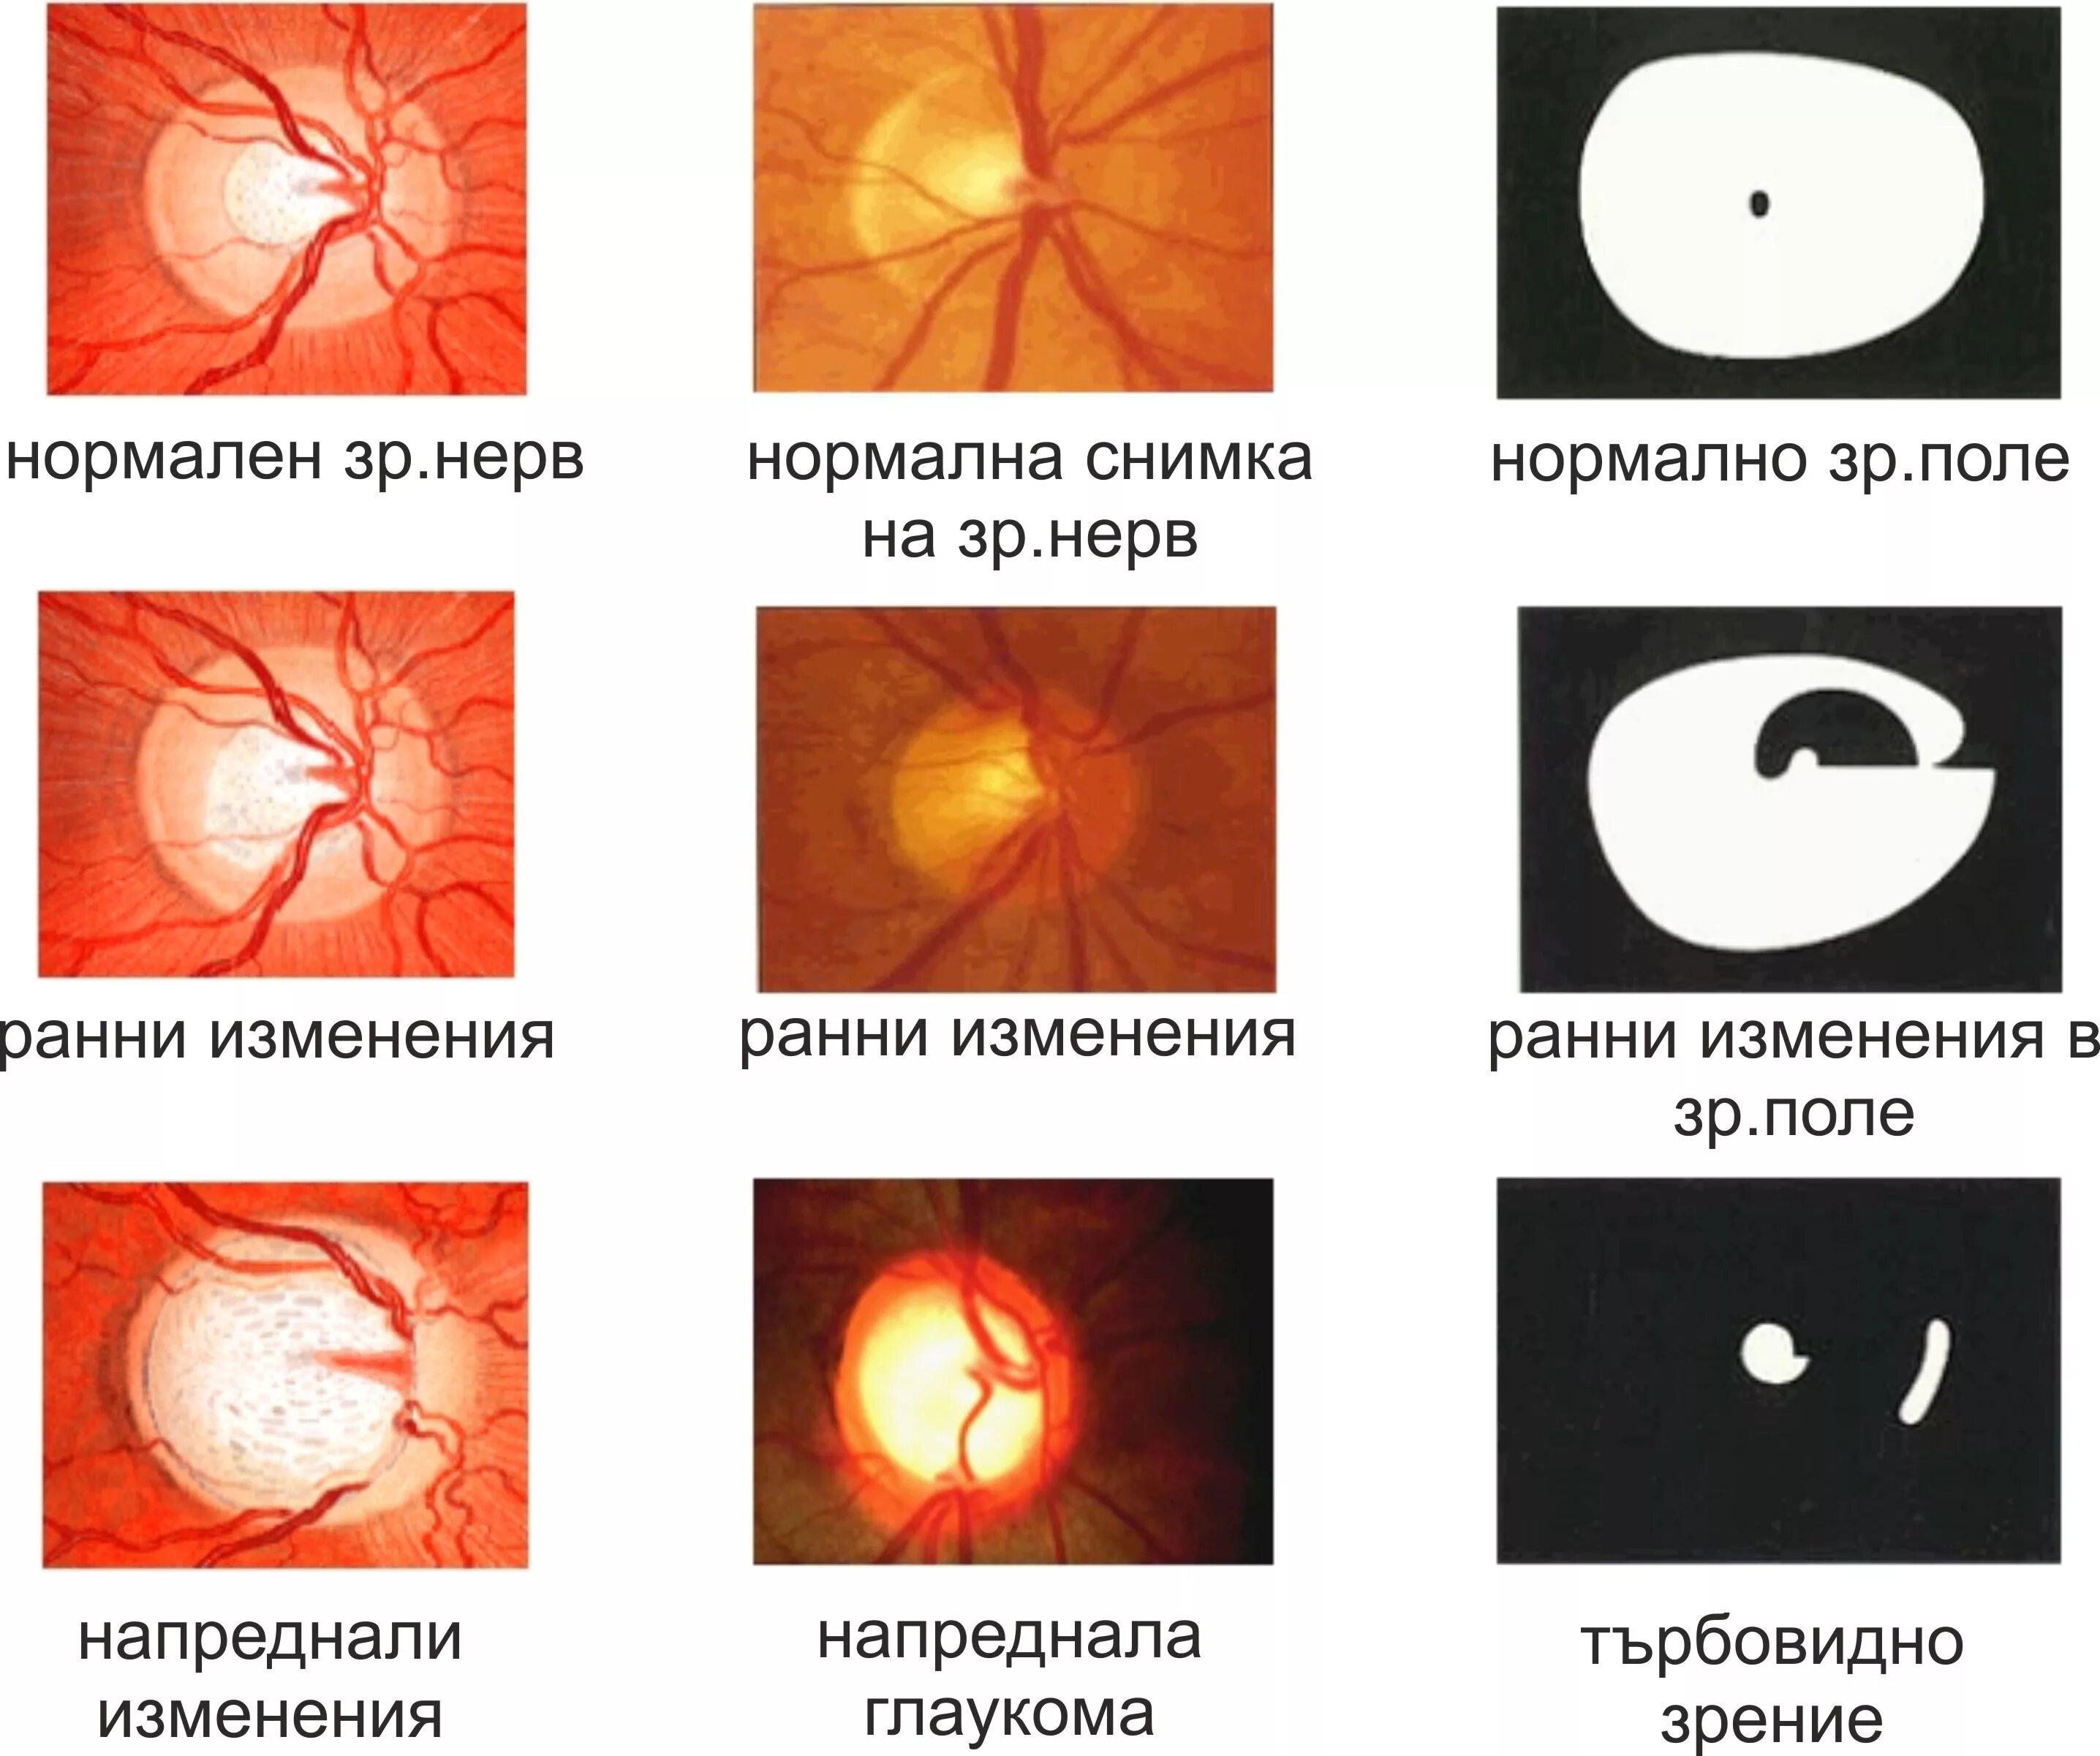 Глаукома поля зрения. Стадии глаукомы.